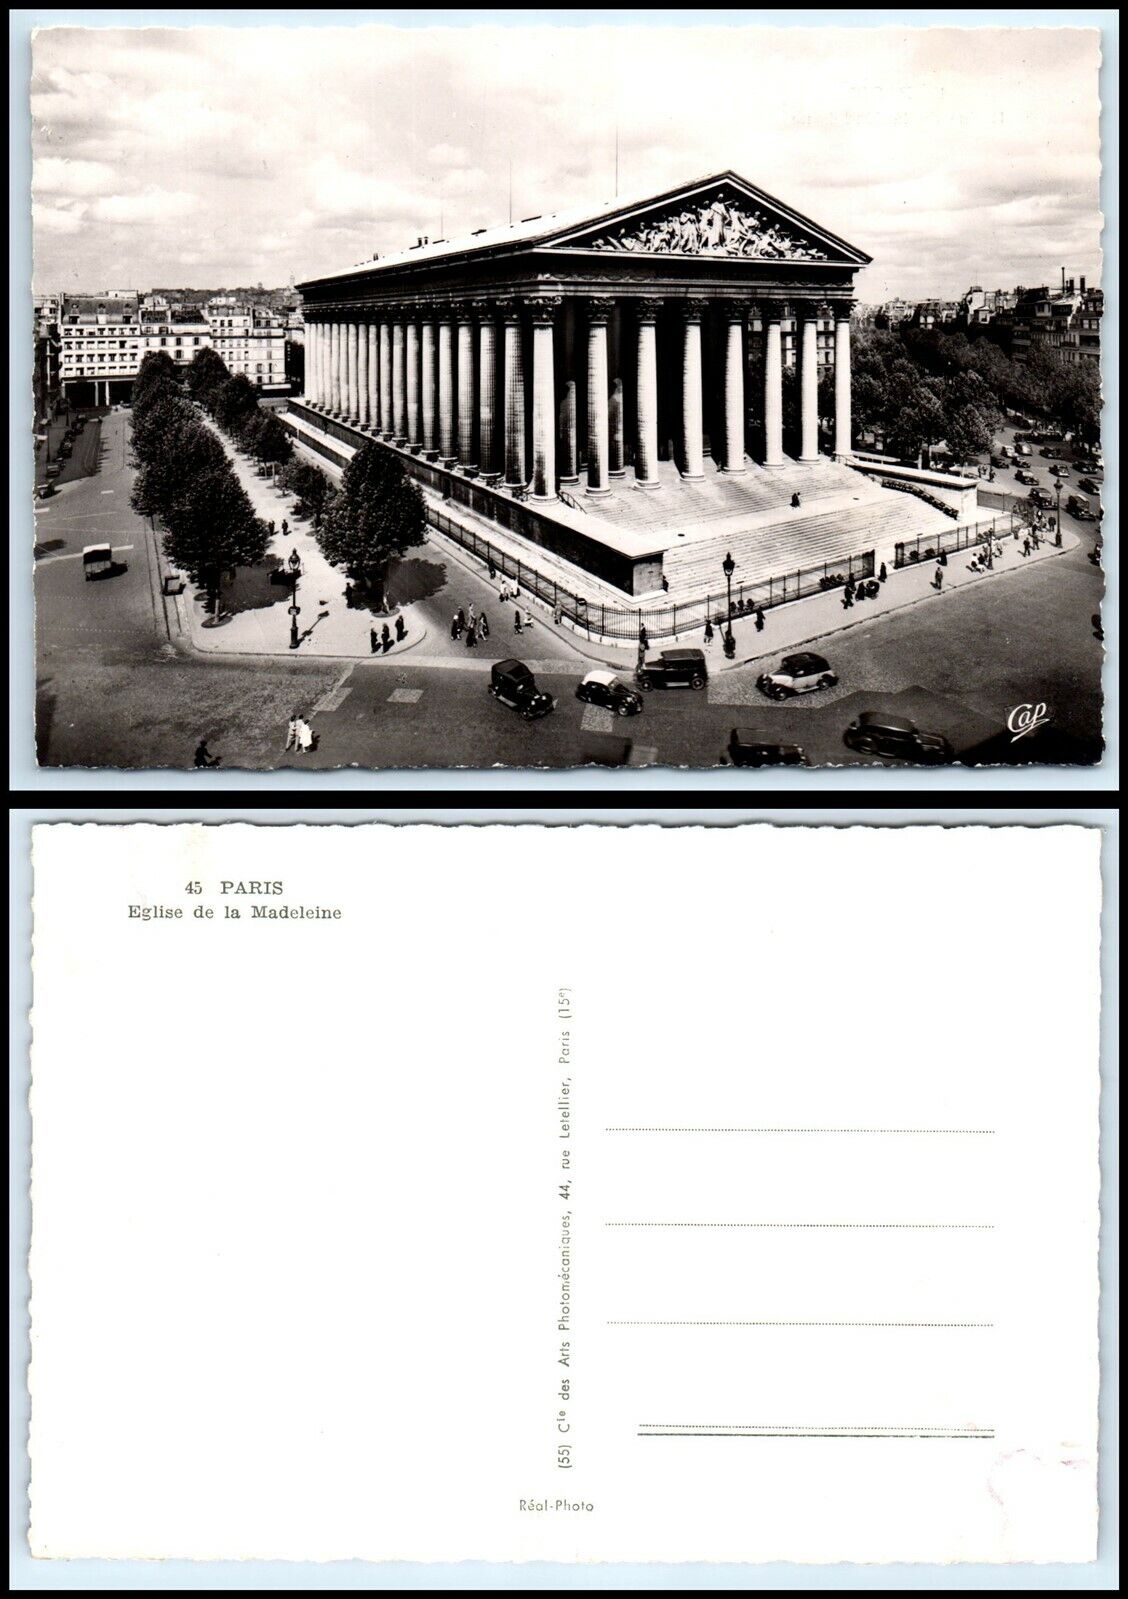 FRANCE RPPC Photo Postcard - Paris, Eglise de la Madeleine GZ8